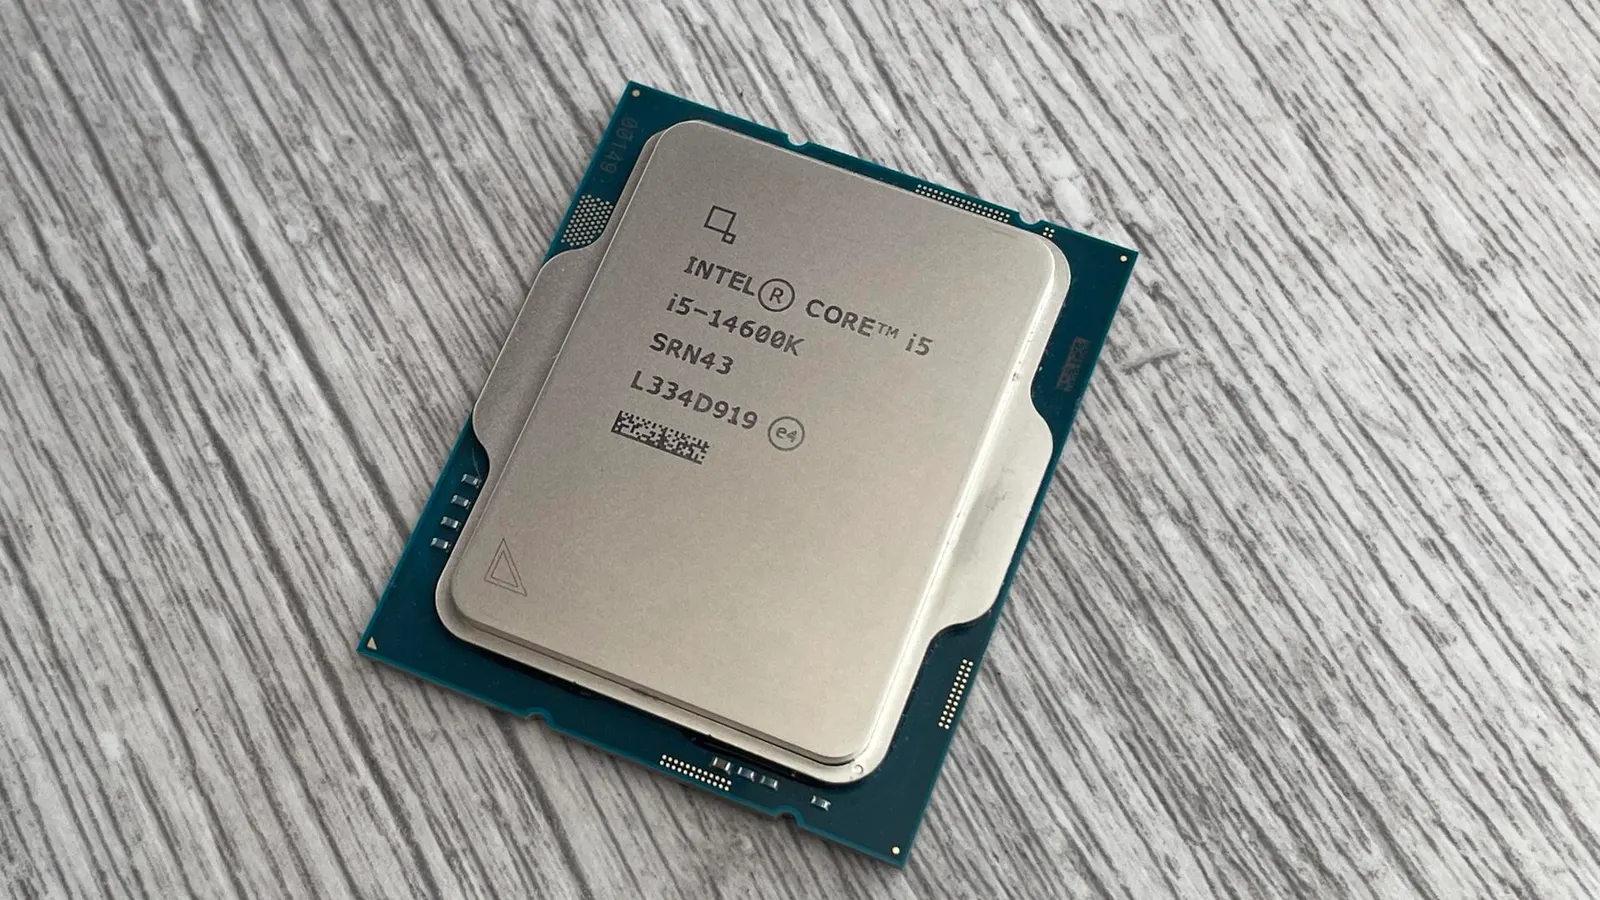 Intel Core i5-14600K - добротный процессор под сокет LGA1700